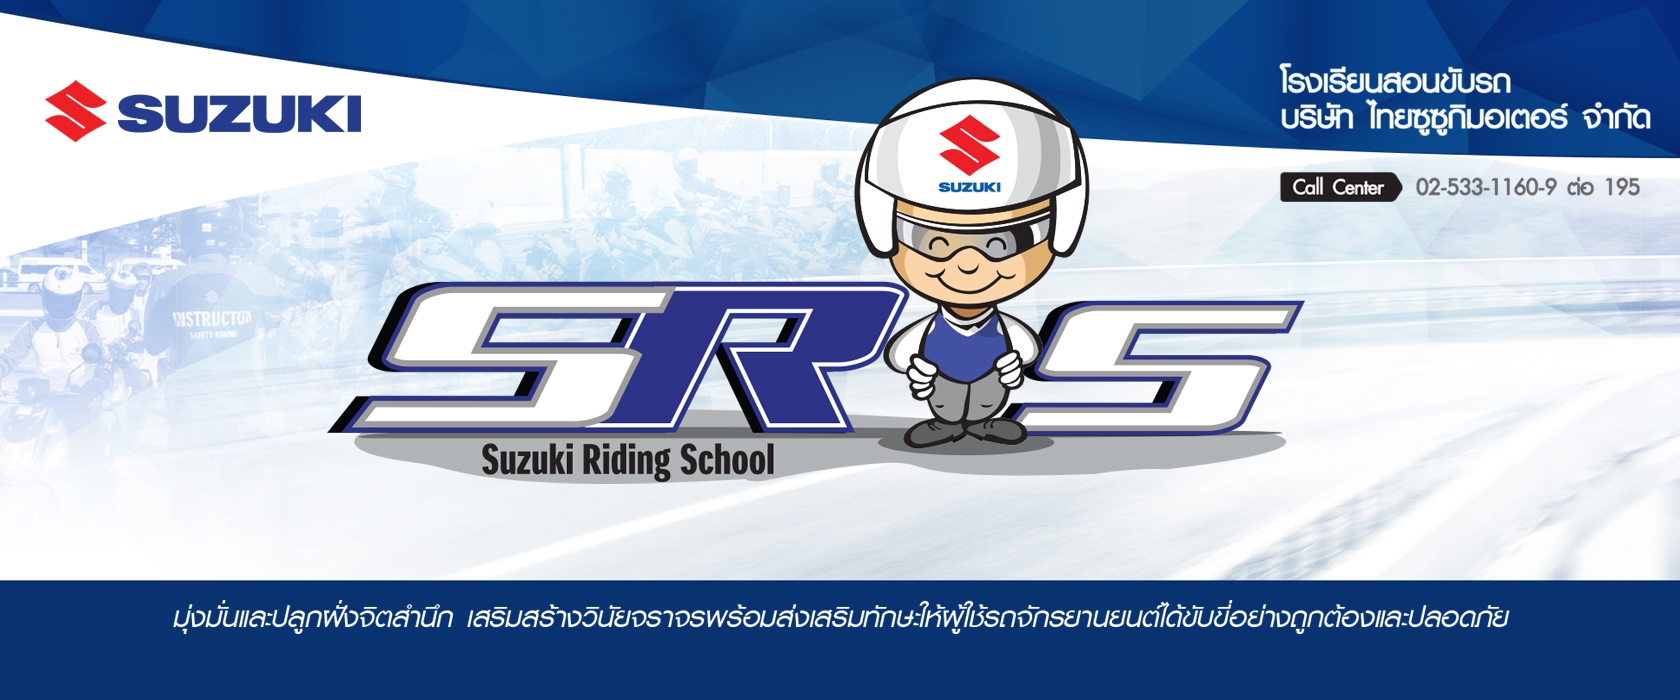 suzuki riding school